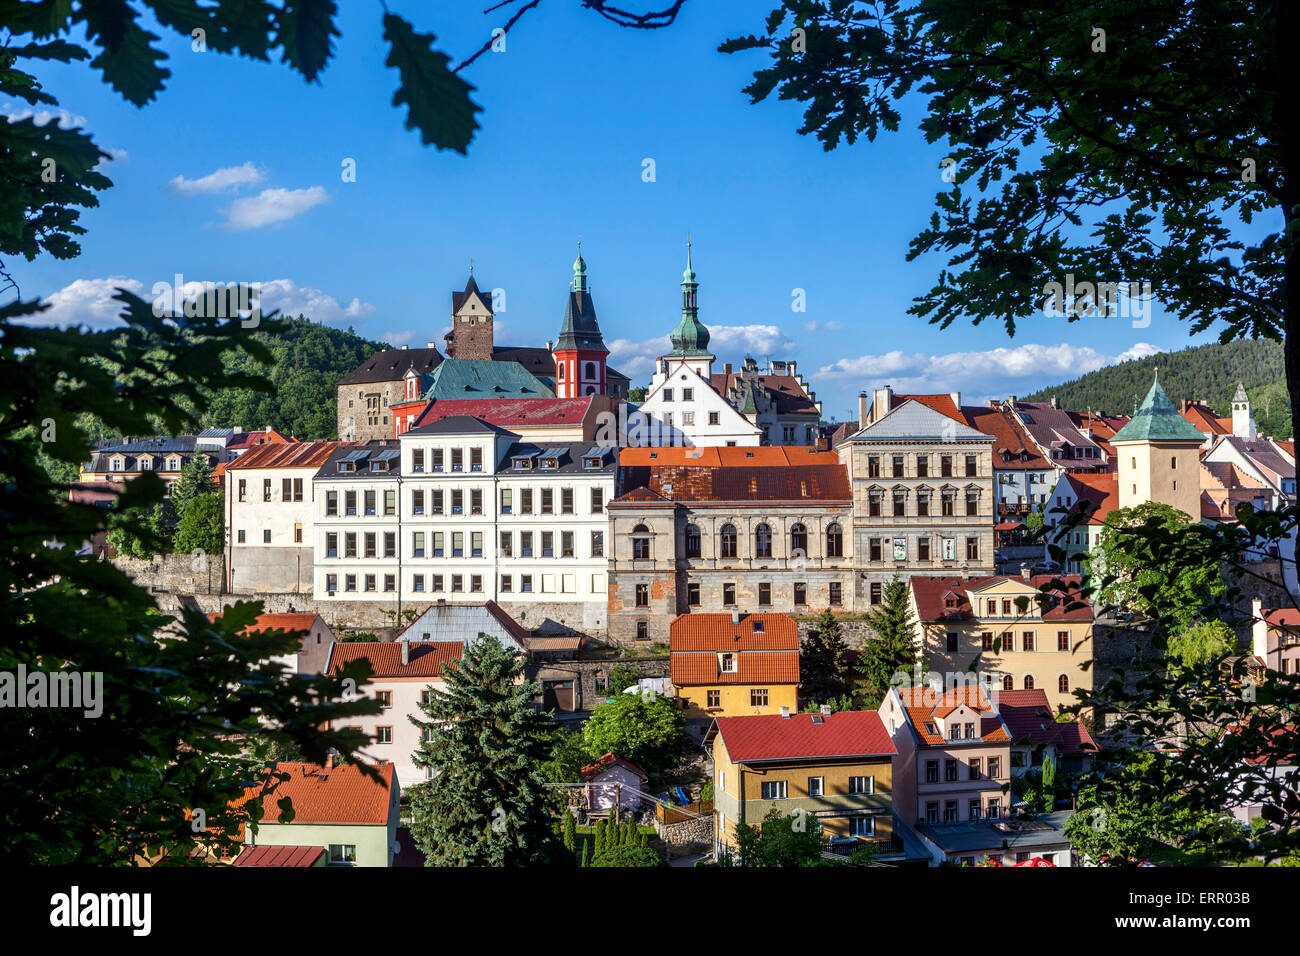 Loket République tchèque vieille ville historique, de la région de Karlovy Vary, en Bohême de l'Ouest, République Tchèque Banque D'Images